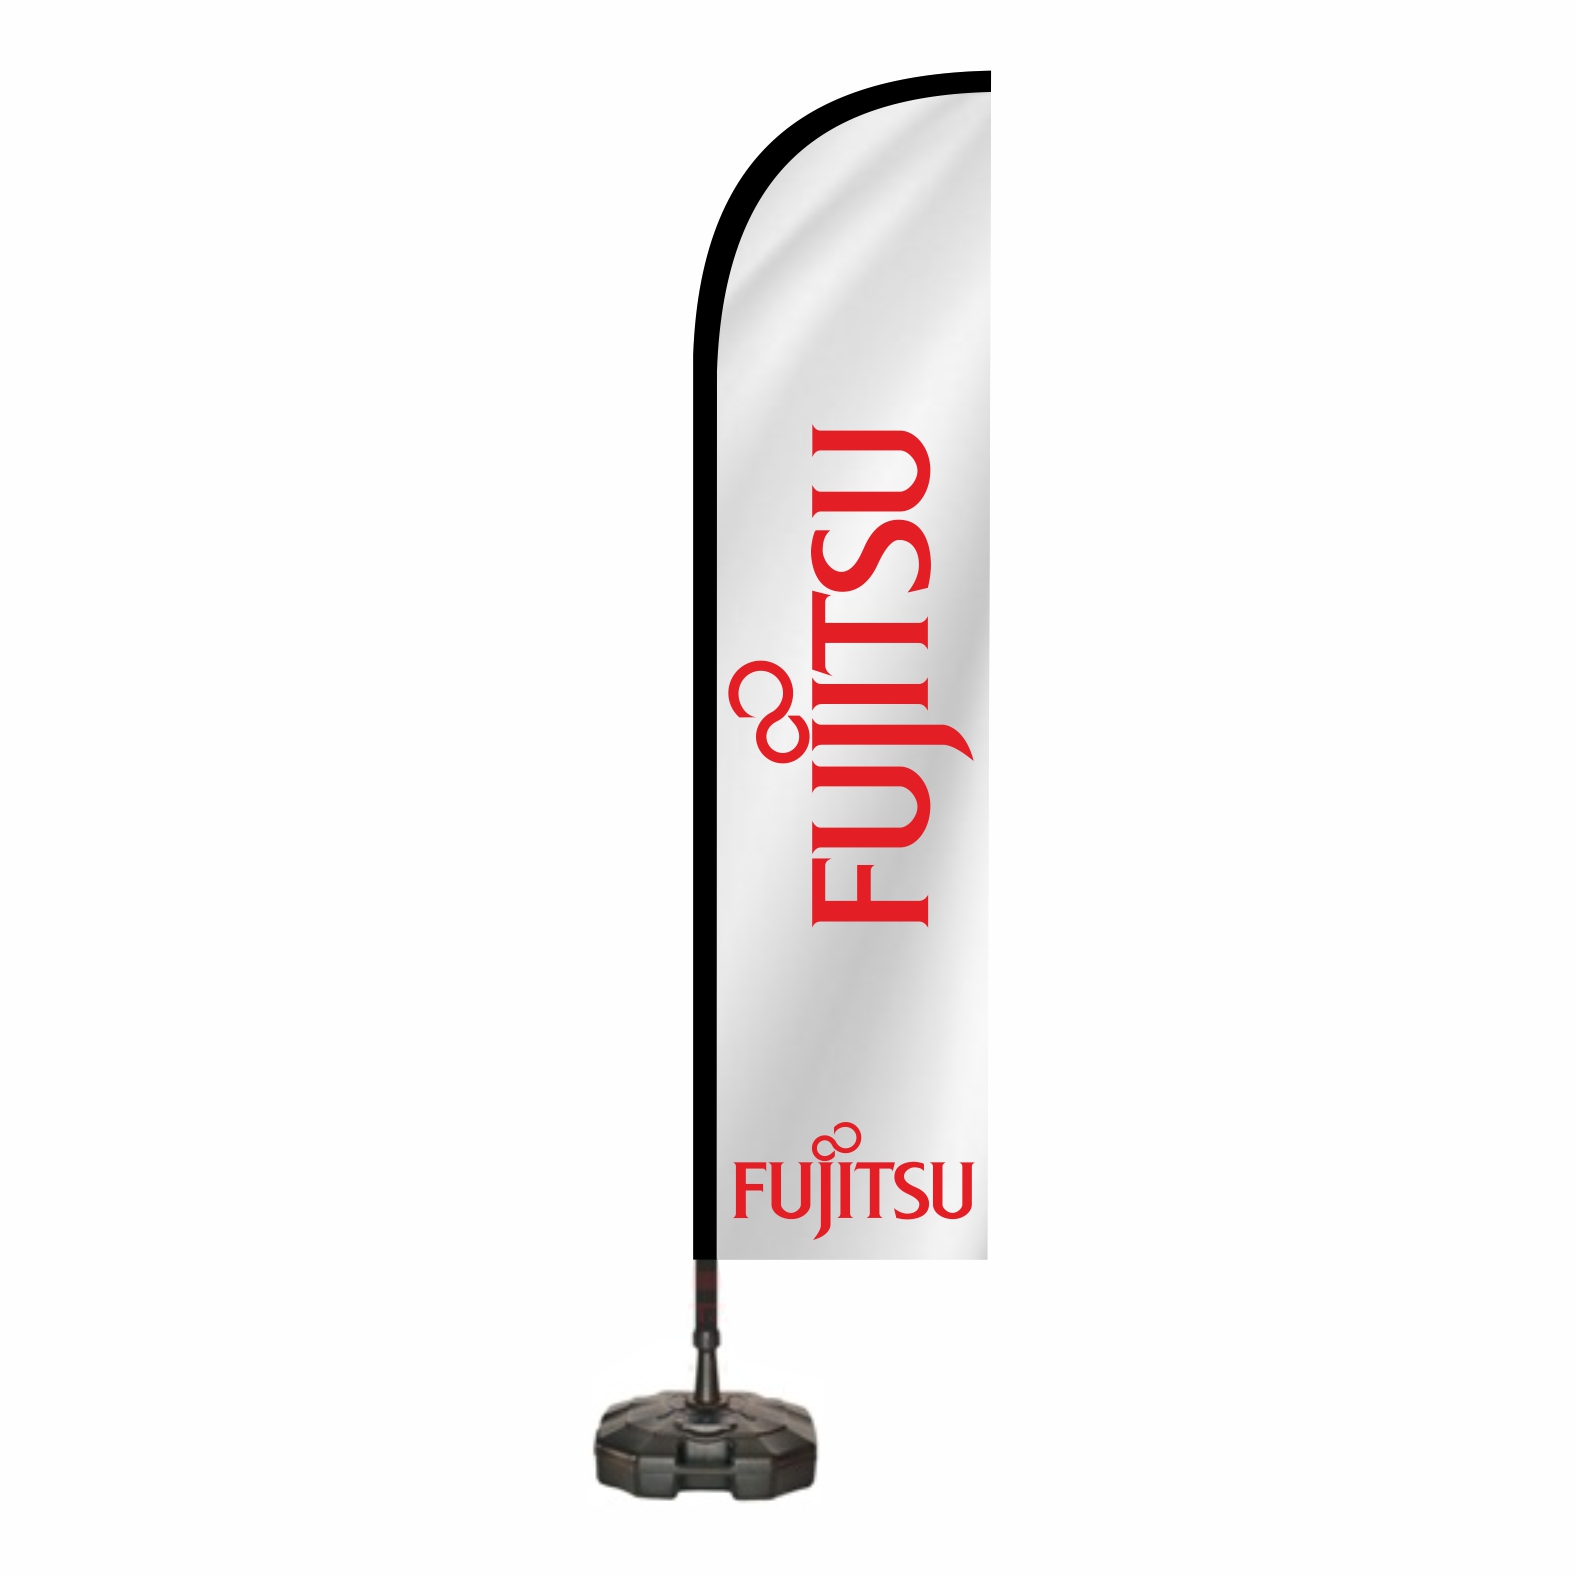 Fujitsu Oltal Bayra retimi ve Sat